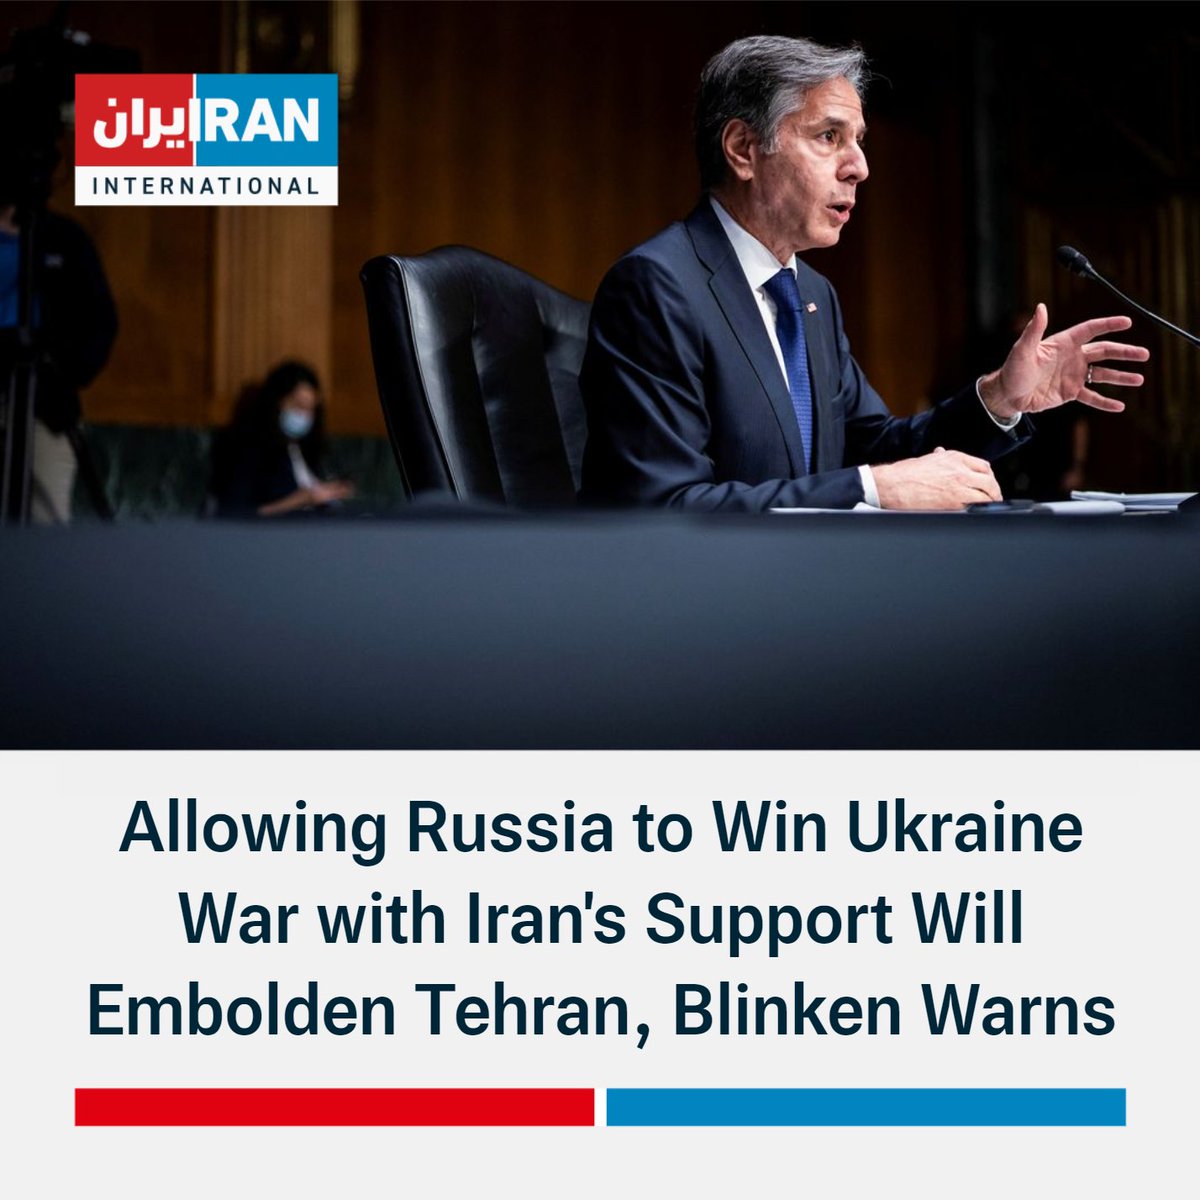 Sekretarz stanu USA @SecBlinken na przesłuchaniu w Senacie: Ponieważ odcięliśmy Rosji tradycyjne środki zaopatrywania swojej armii, Rosja coraz częściej zwraca się o pomoc do Iranu. W zamian Moskwa dostarczała Iranowi coraz bardziej zaawansowaną technologię wojskową